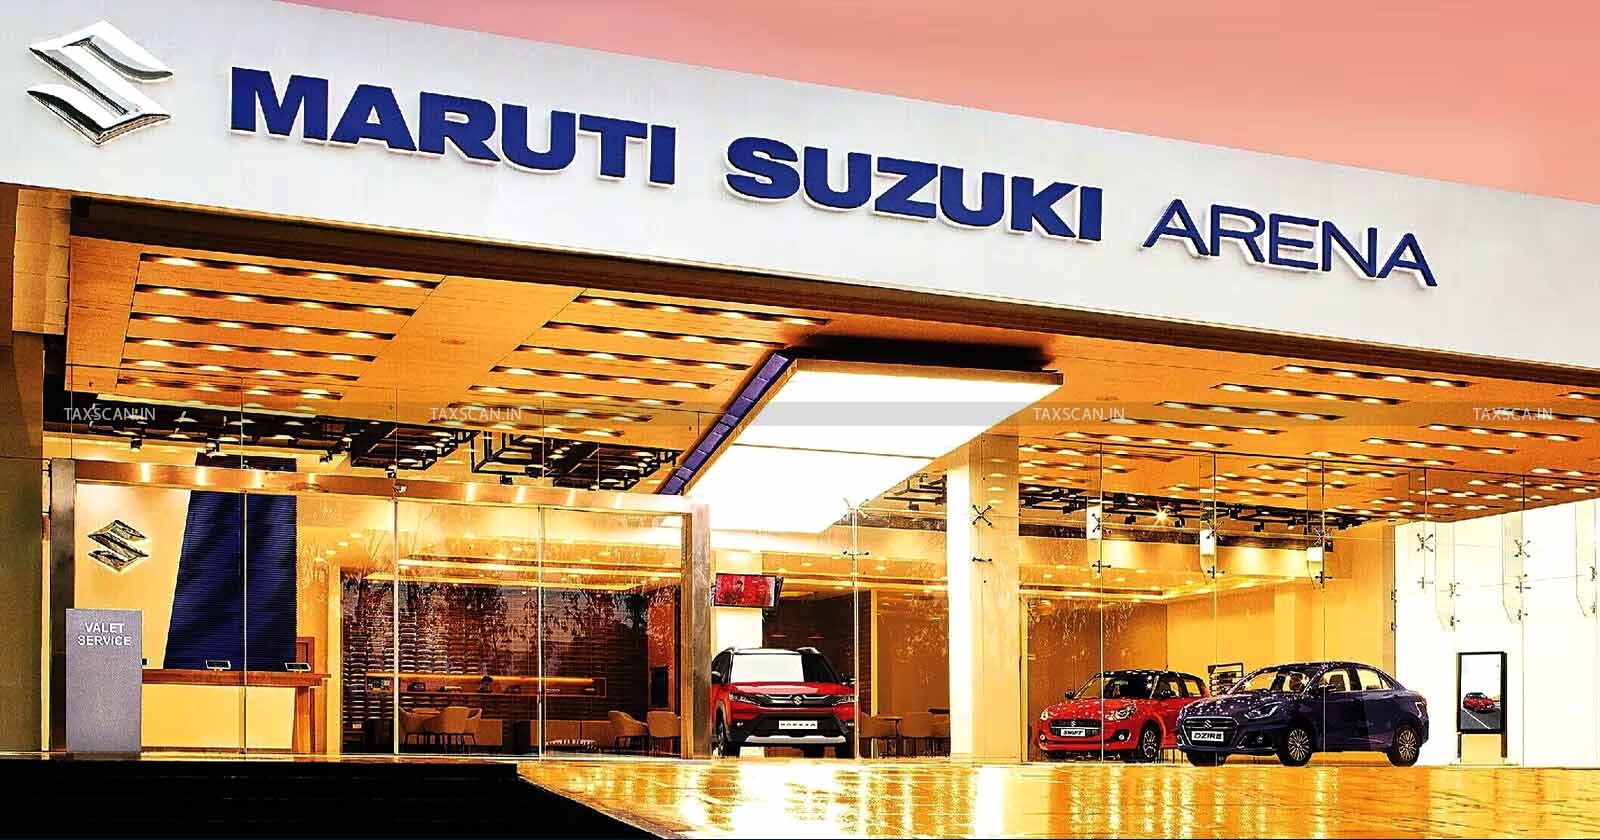 Maruti Suzuki - Suzuki - Maruti Suzuki GST Violation - Maruti Import Scrutiny - GST Show Cause Notice Maruti Suzuki - Taxscan